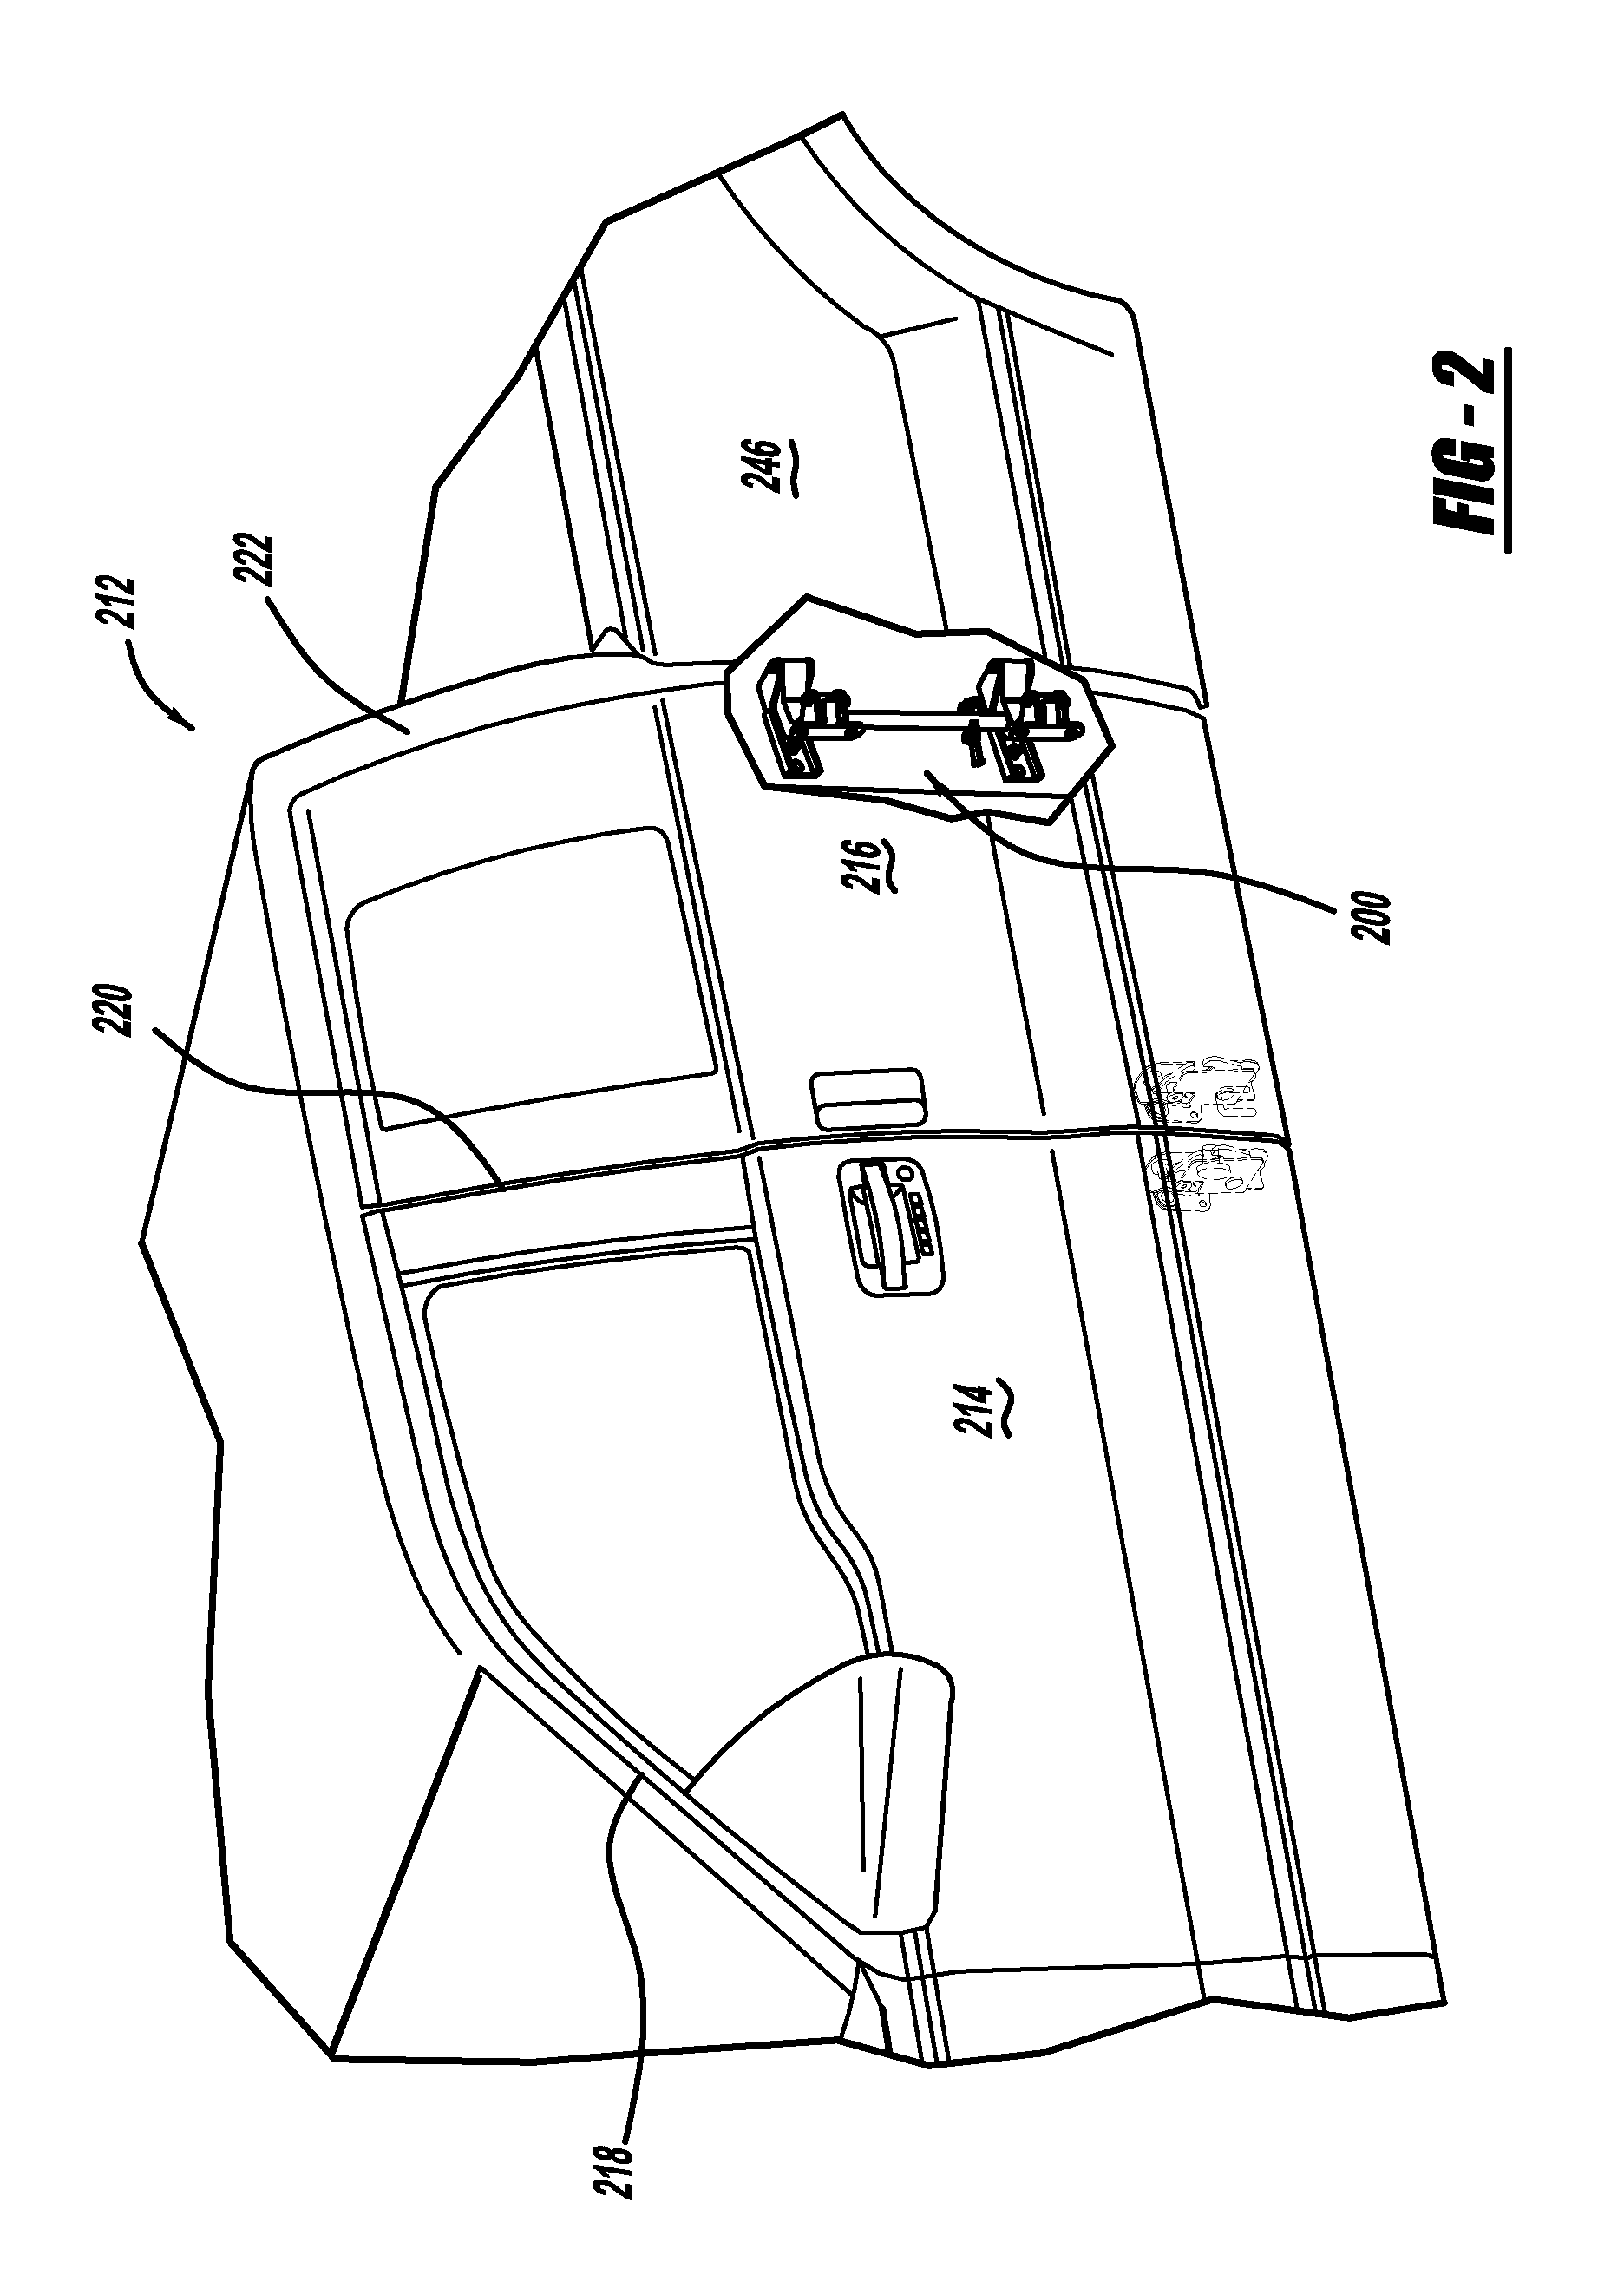 Vehicle unsequenced rear door articulating mechanism